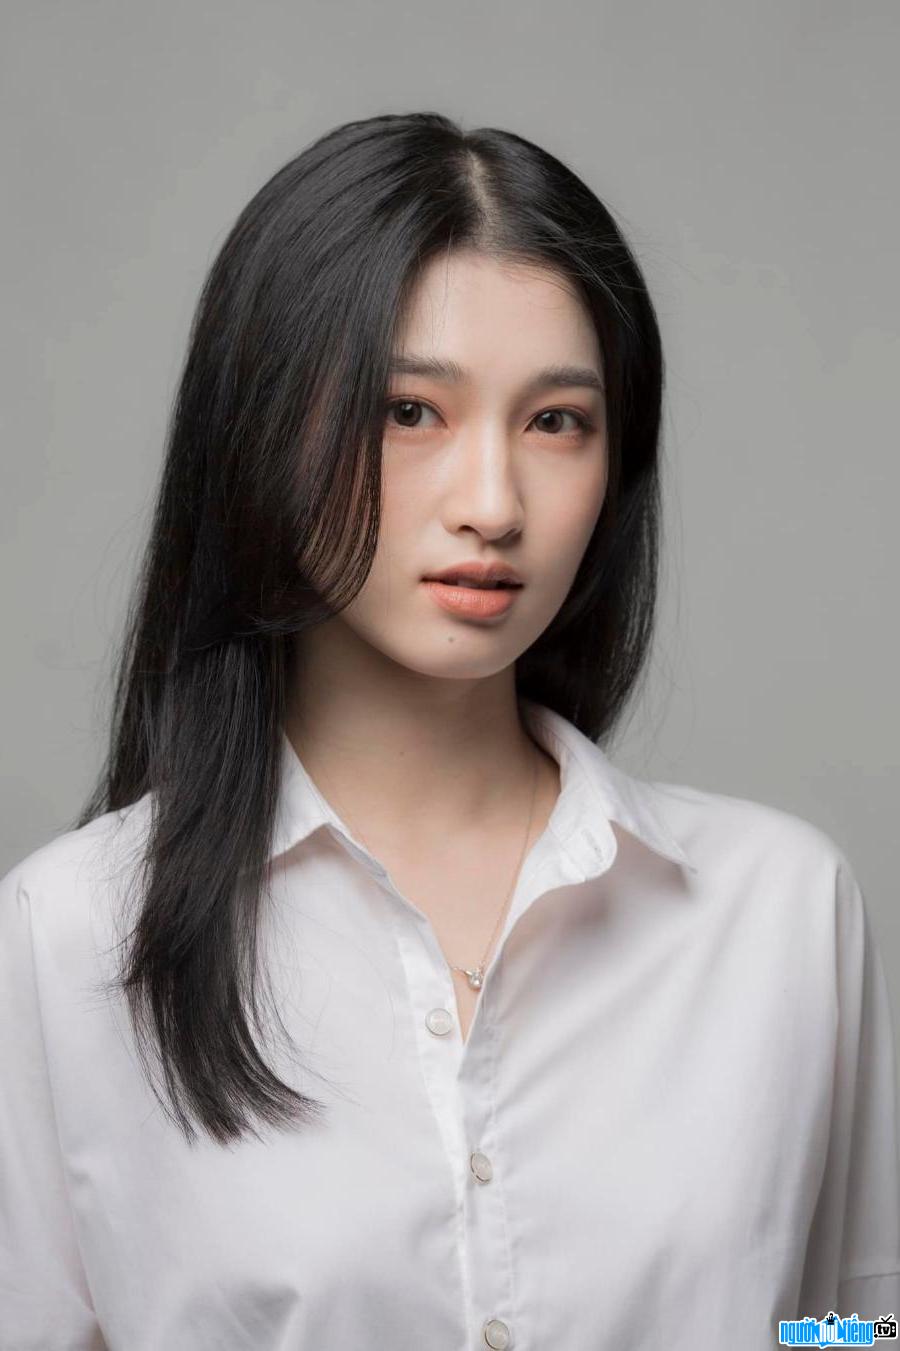 Ảnh chân dung hot girl Nguyễn Phương Nhi